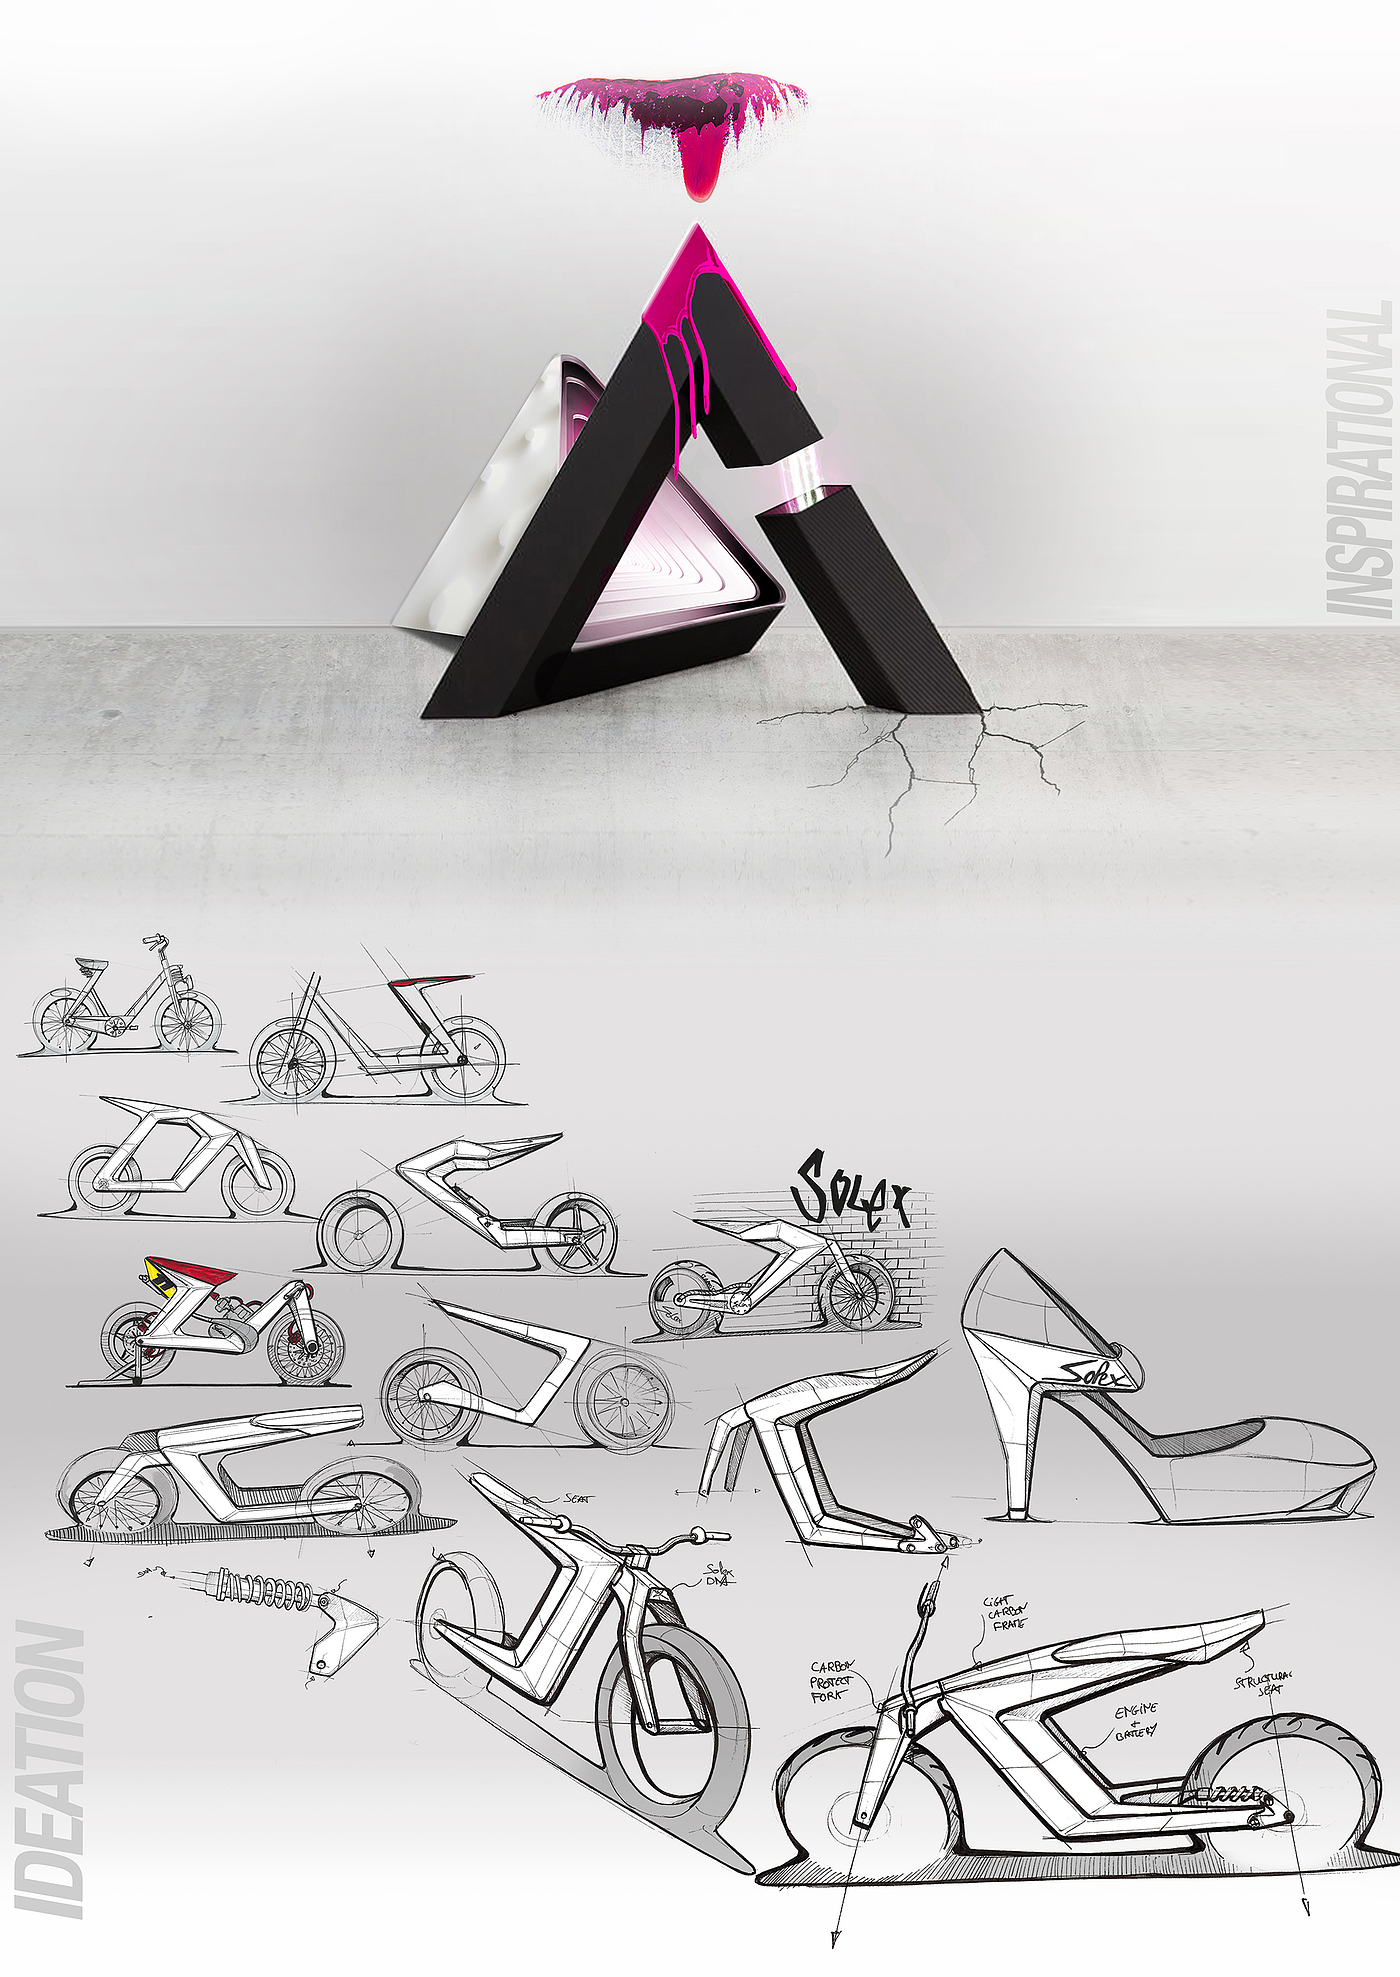 概念设计，自行车设计，SOLEX，